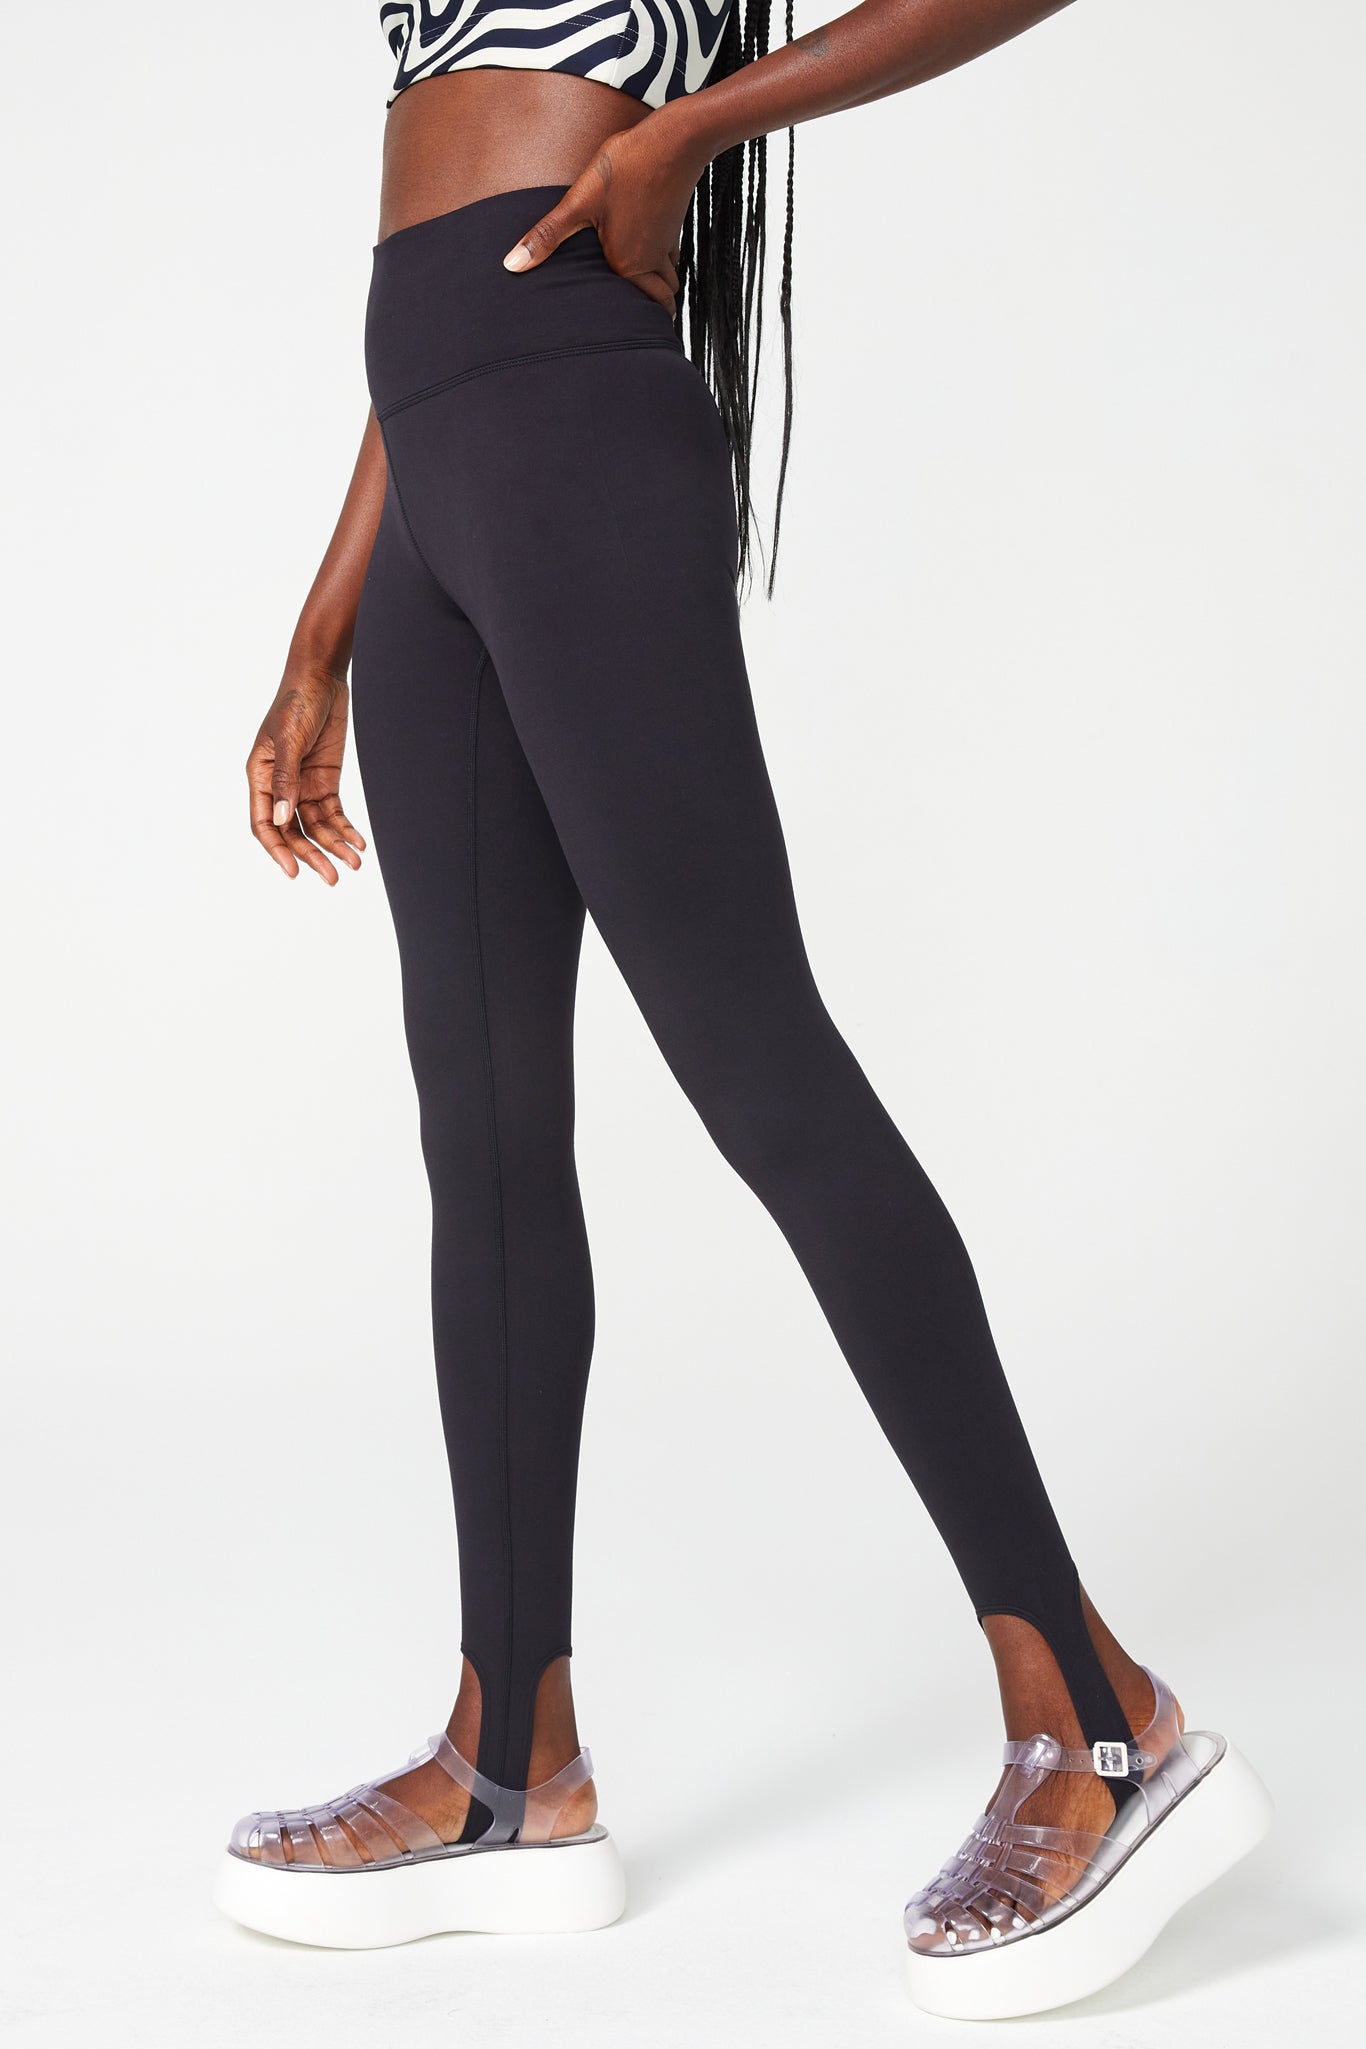 By Victoria's Secret Black Regular Size Leggings for Women for sale